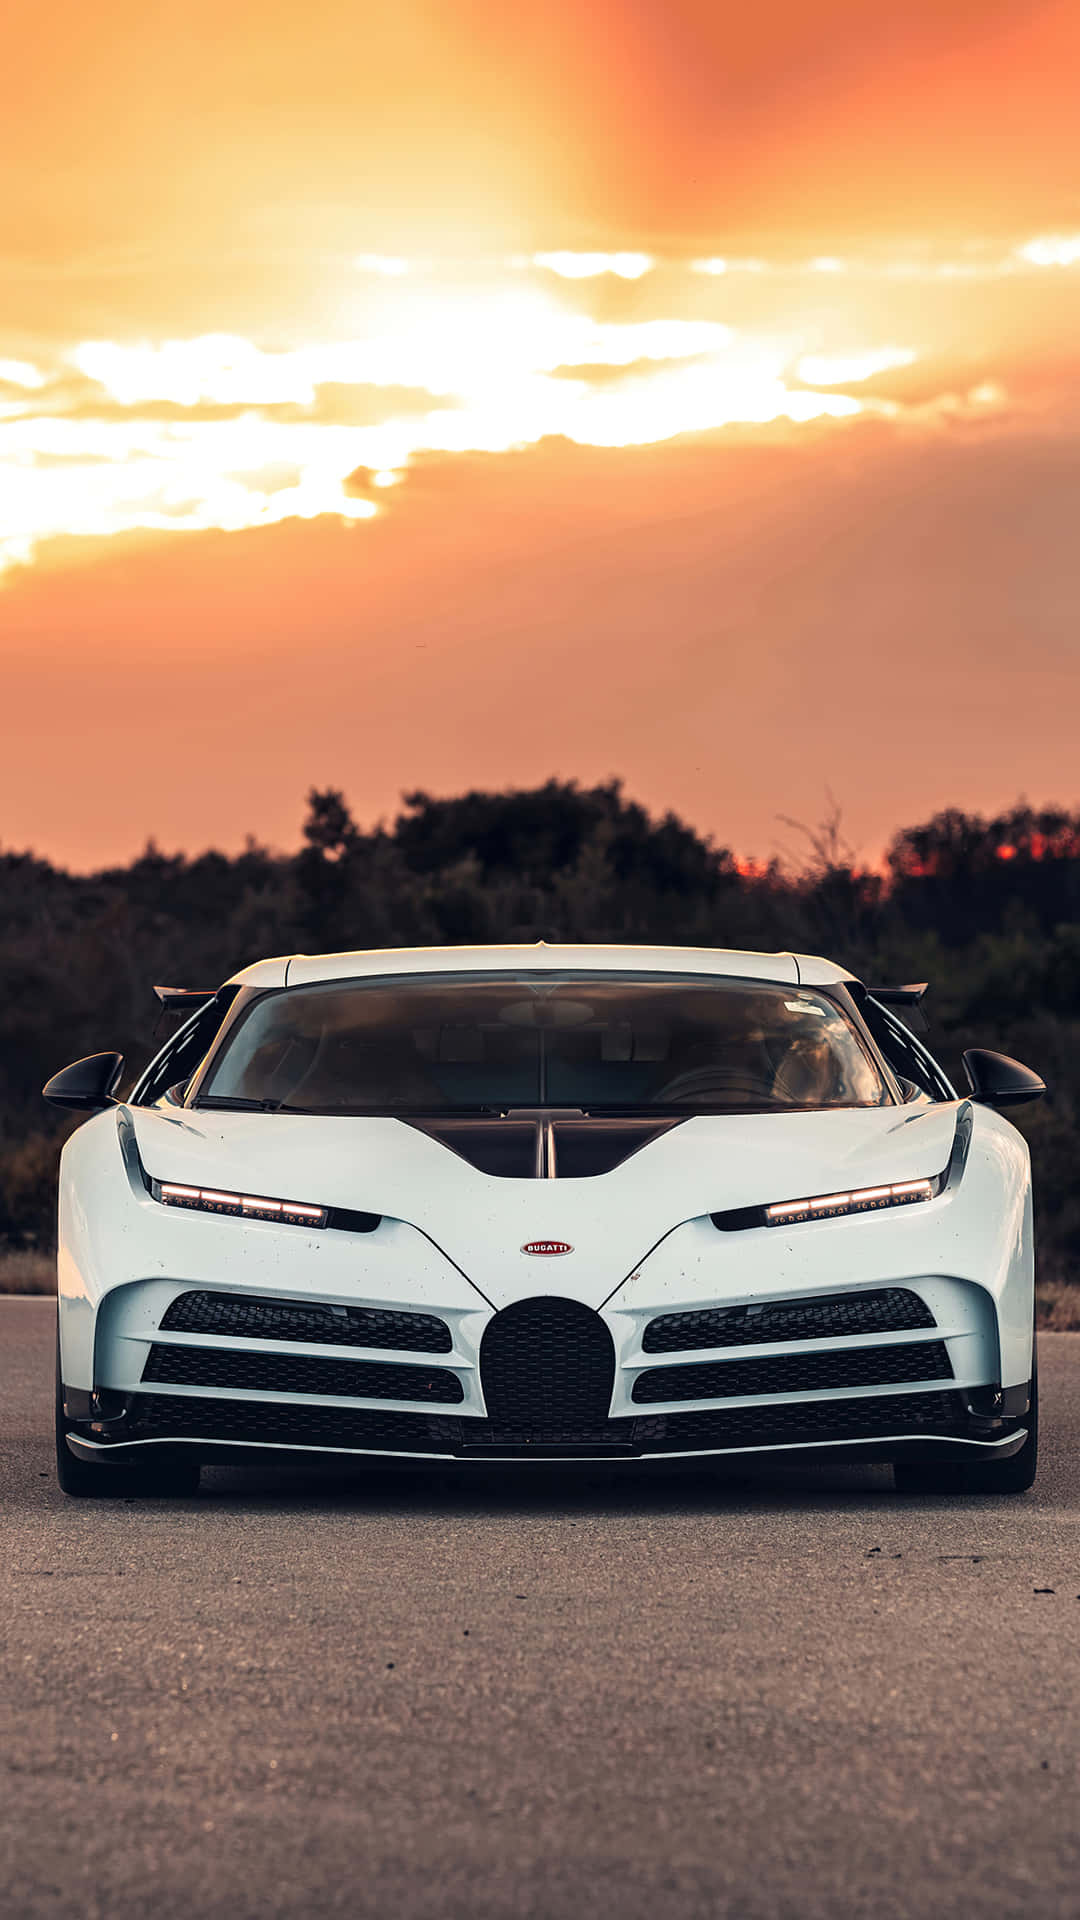 En hvid Bugatti Chiron, der sidder på vejen ved solnedgang. Wallpaper